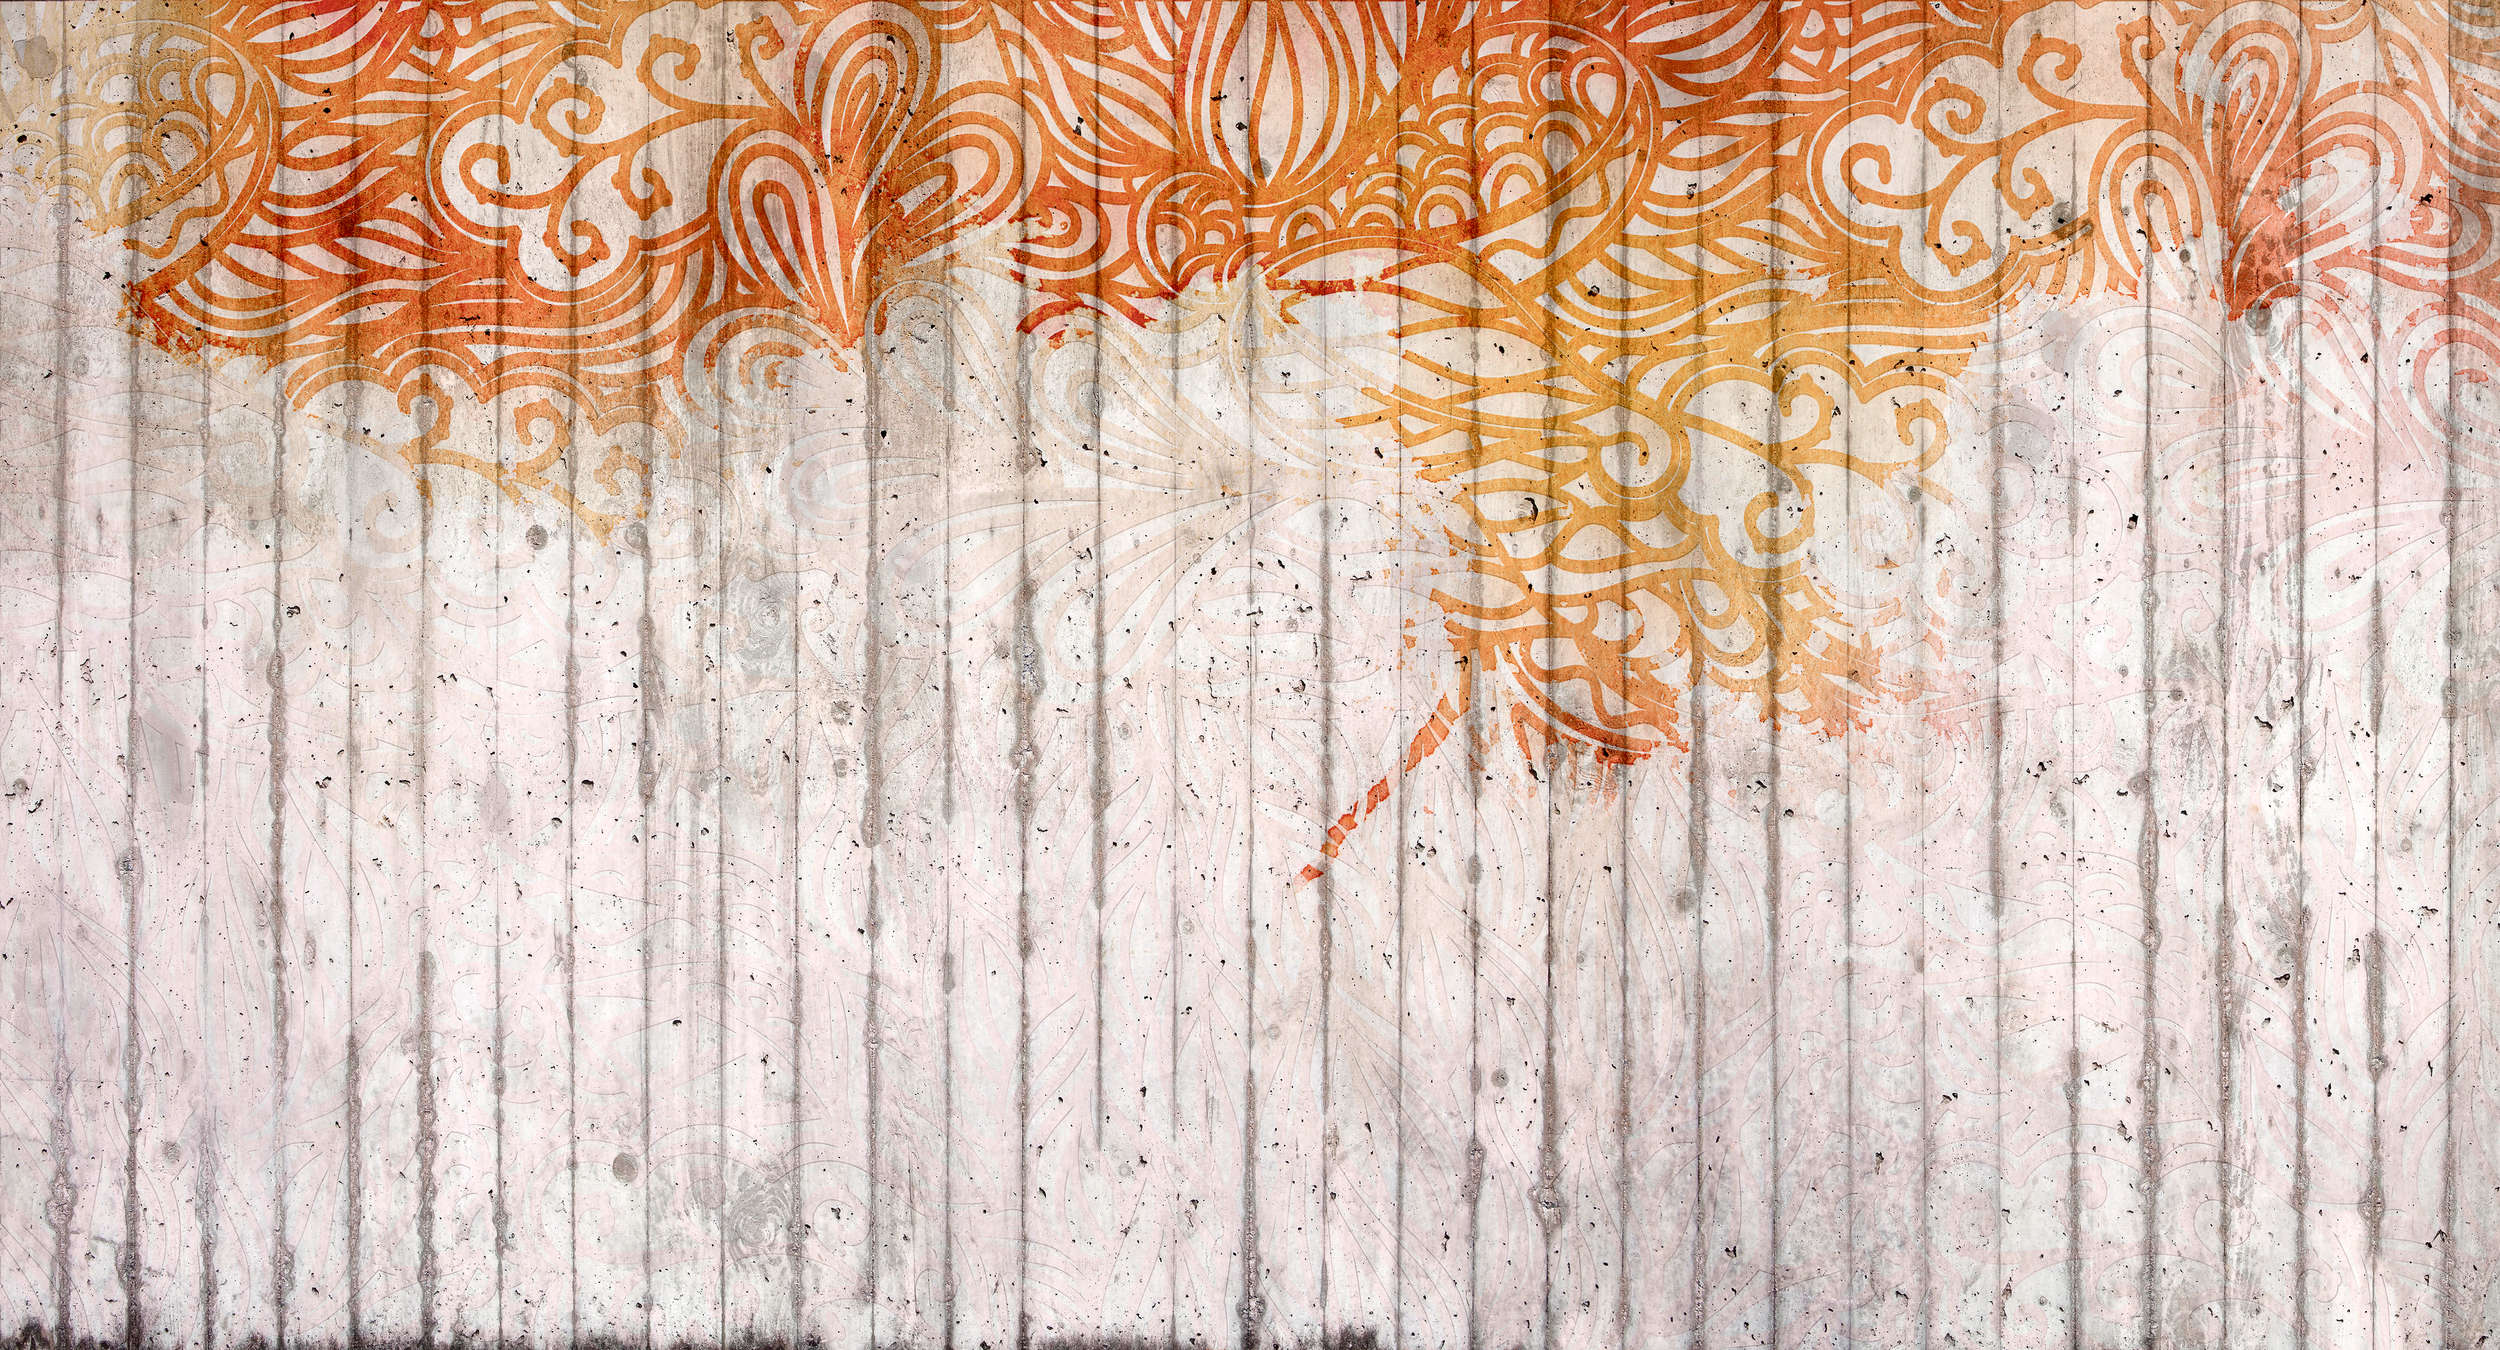             Papier peint panoramique béton avec ornement style doodle - orange, gris, rouge
        